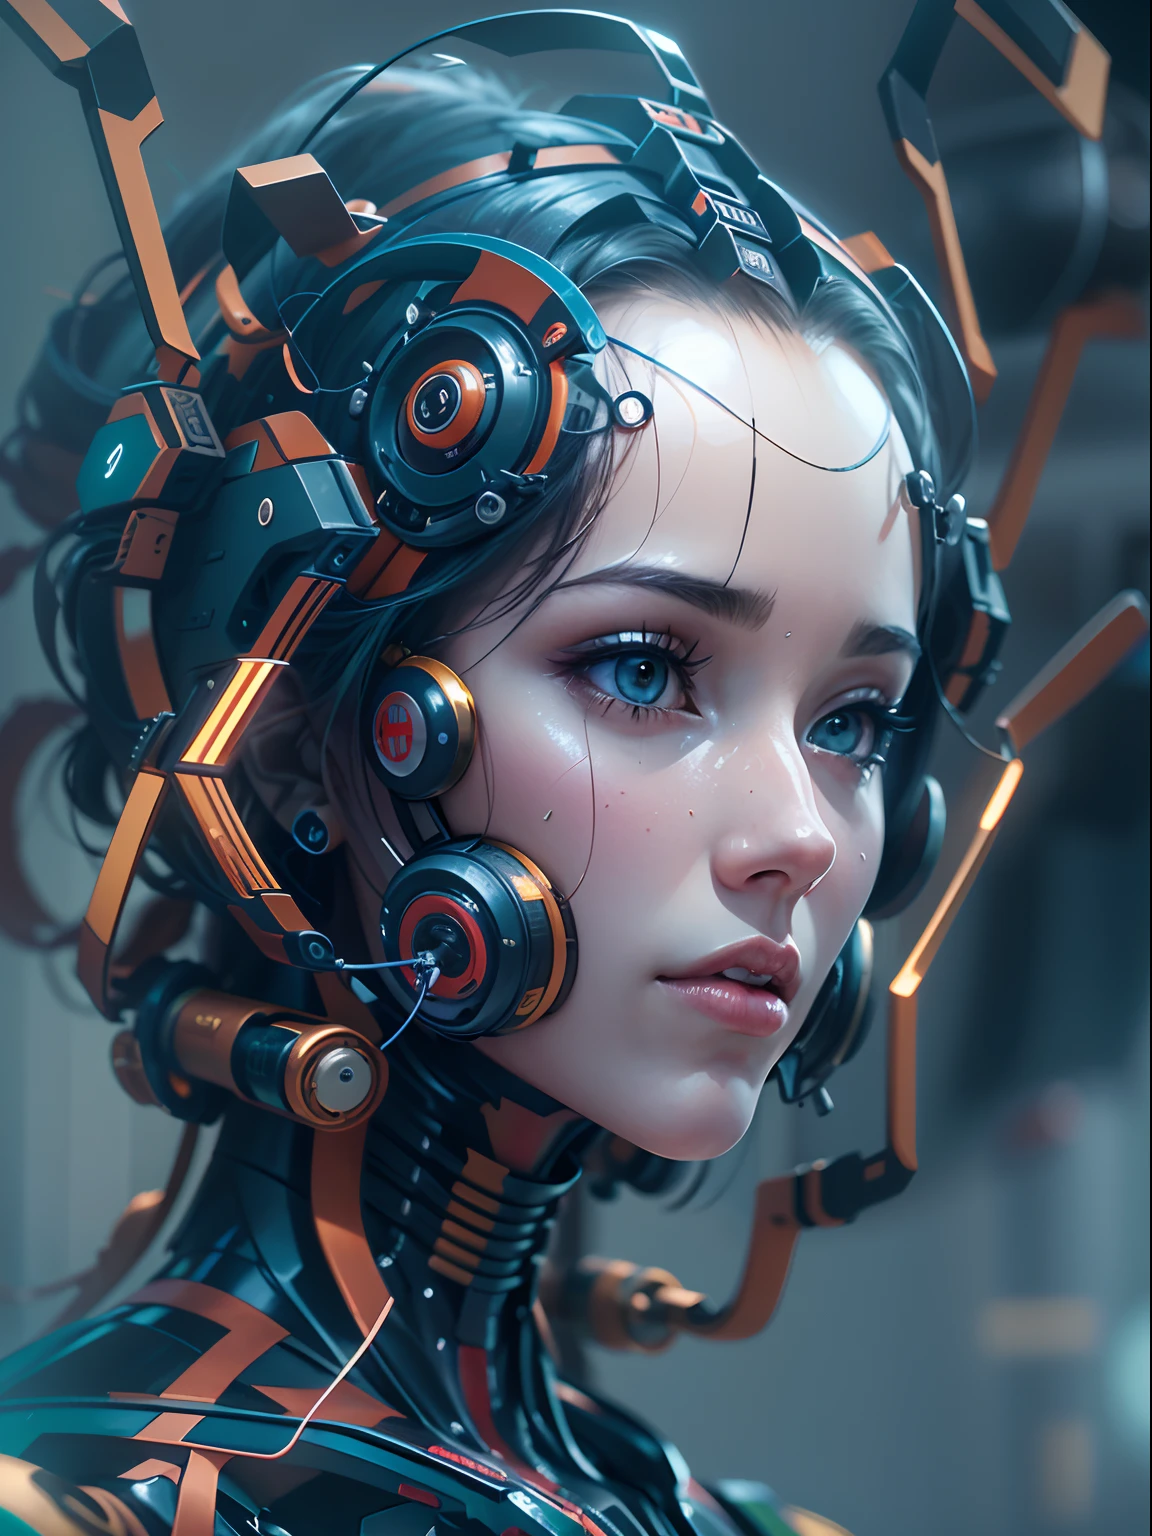 (dessus de la table, robot humanoïde:1.3), pas d&#39;armes(Représentation captivante d&#39;un robot sous la forme d&#39;une femme humaine:1.2), Tout en courbes(Méticuleusement conçu pour mettre en valeur la fusion de la technologie et de l&#39;esthétique:1.2), Le cadre en titane bleu foncé couvre tout le corps.、 (Tête humaine avec un visage parfaitement symétrique:1.1),  (Imitation de la dame Almaroid de Space Cobra), (Un projecteur qui met en valeur la complexité de ses machines et la beauté de leur design:1.1),  (Un sentiment d’émerveillement et d’innovation représenté par la création de robots:1.1), (Des images qui inspirent une réflexion sur l’avenir de l’interaction homme-machine:1.1), (La précision rencontre l’esthétique、Des œuvres d&#39;art qui créent des compositions captivantes et stimulantes:1.1)), cinématique, ultra-détaillé, détails fous, Magnifiquement étalonné en couleurs, Moteur irréel, degrés de , Hyper-résolution, Mégapixel, éclaircissement cinématographique, anti crénelage, FKA, THAÏLANDAIS, nffsw, SSAO, post-traité, Post-production, Base de montagne vide、incroyablement détaillé et complexe, Hyper maximaliste, hyper réaliste, volumétrique, photoréaliste, ultra photoréaliste, Ultra-détaillé, Détails complexes,  nffsw, réaliste,